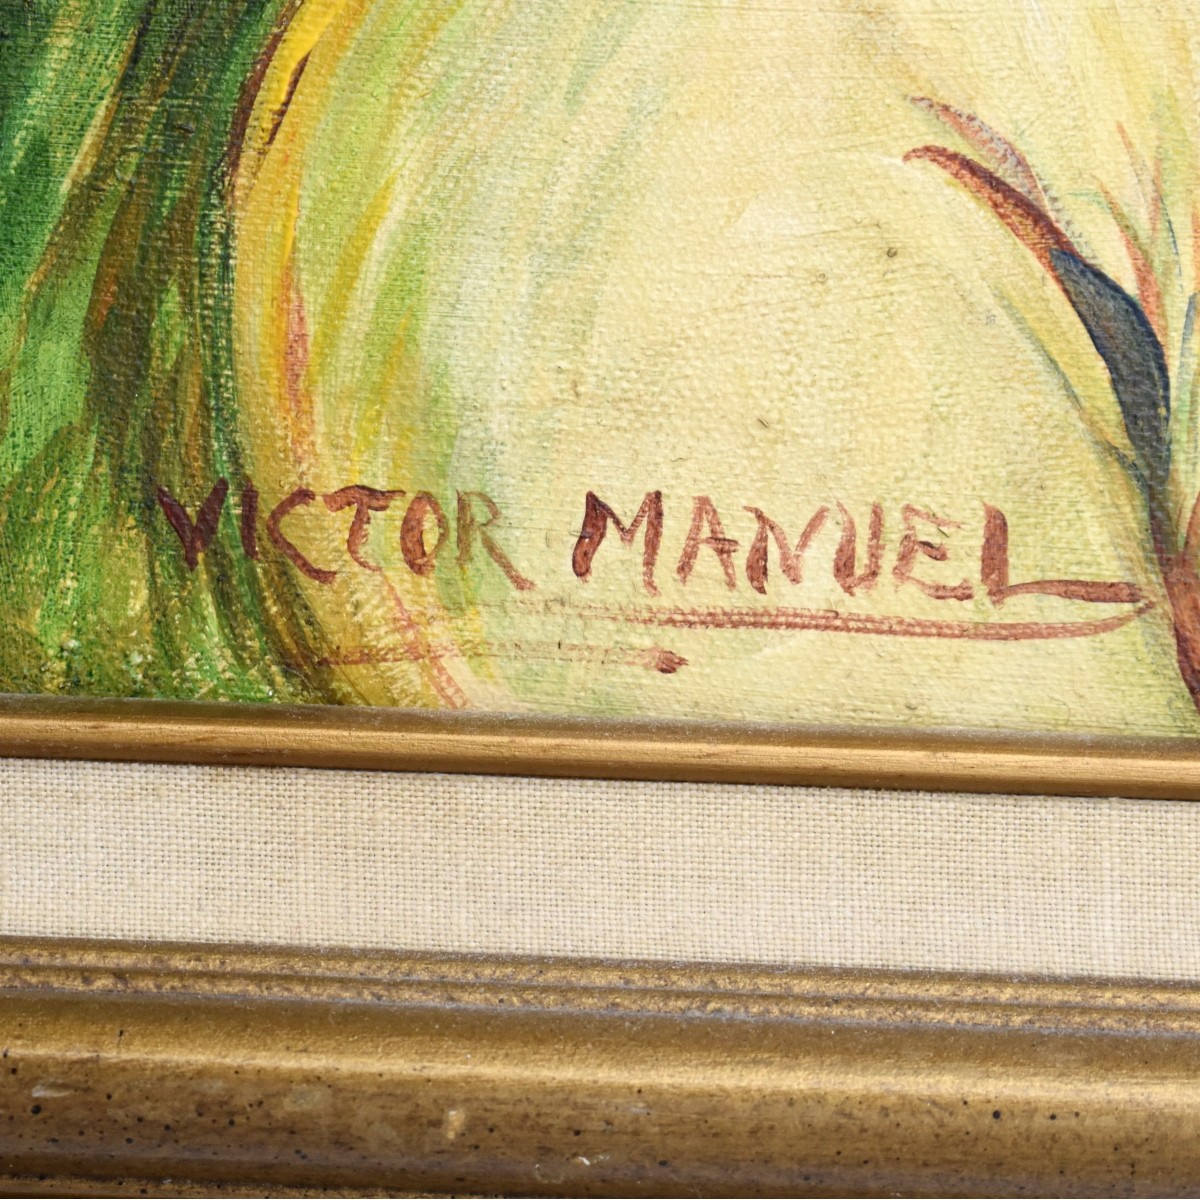 Victor Manuel, Cuban (1897 - 1969)